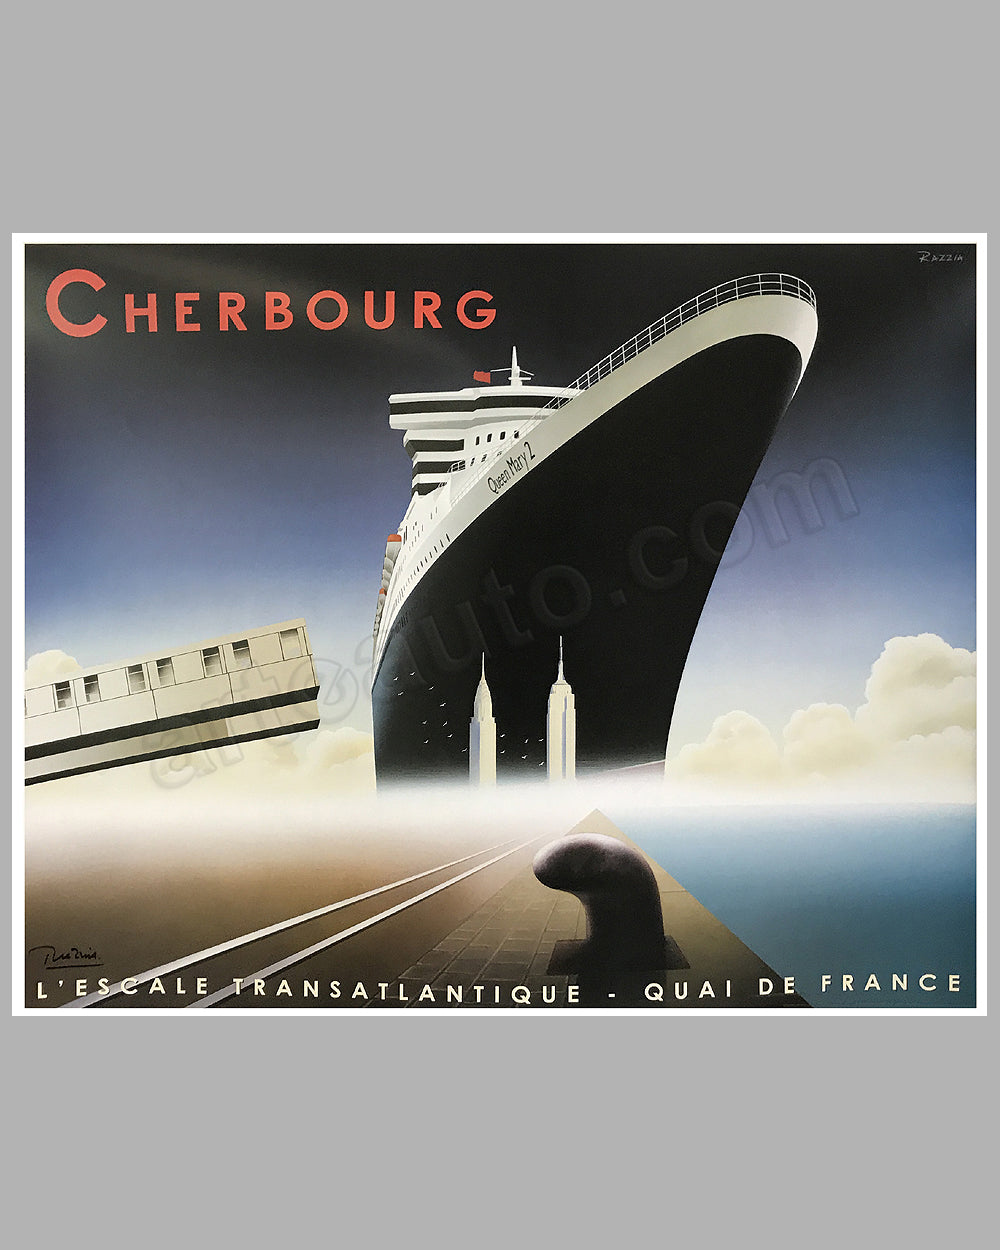 Cherbourg l' Escale Transatlantique large poster by Razzia